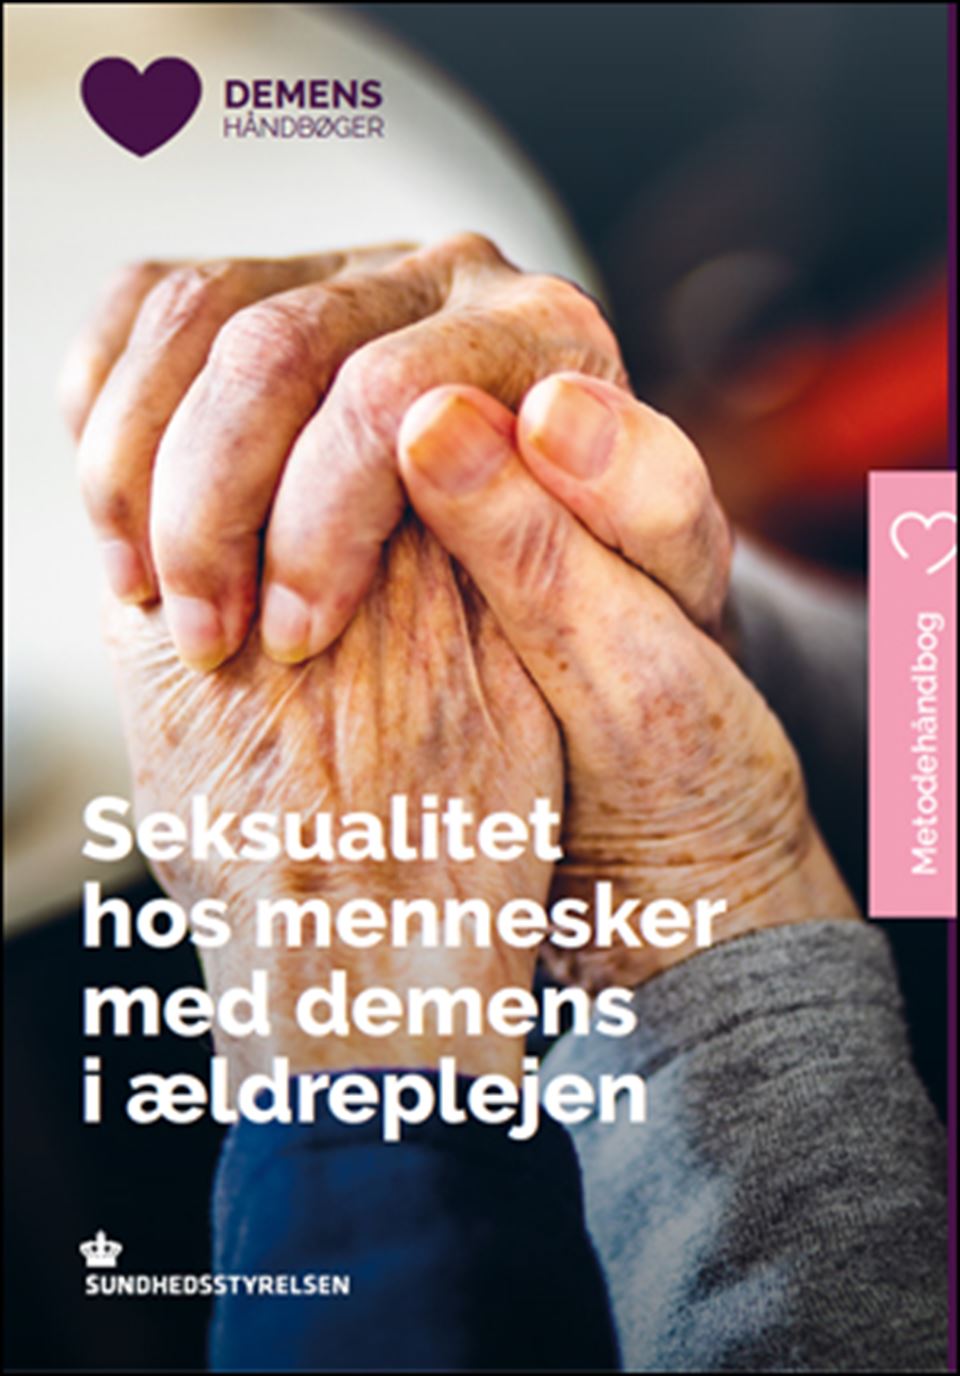 Demenshåndbog: Seksualitet hos mennesker med demens i ældreplejen